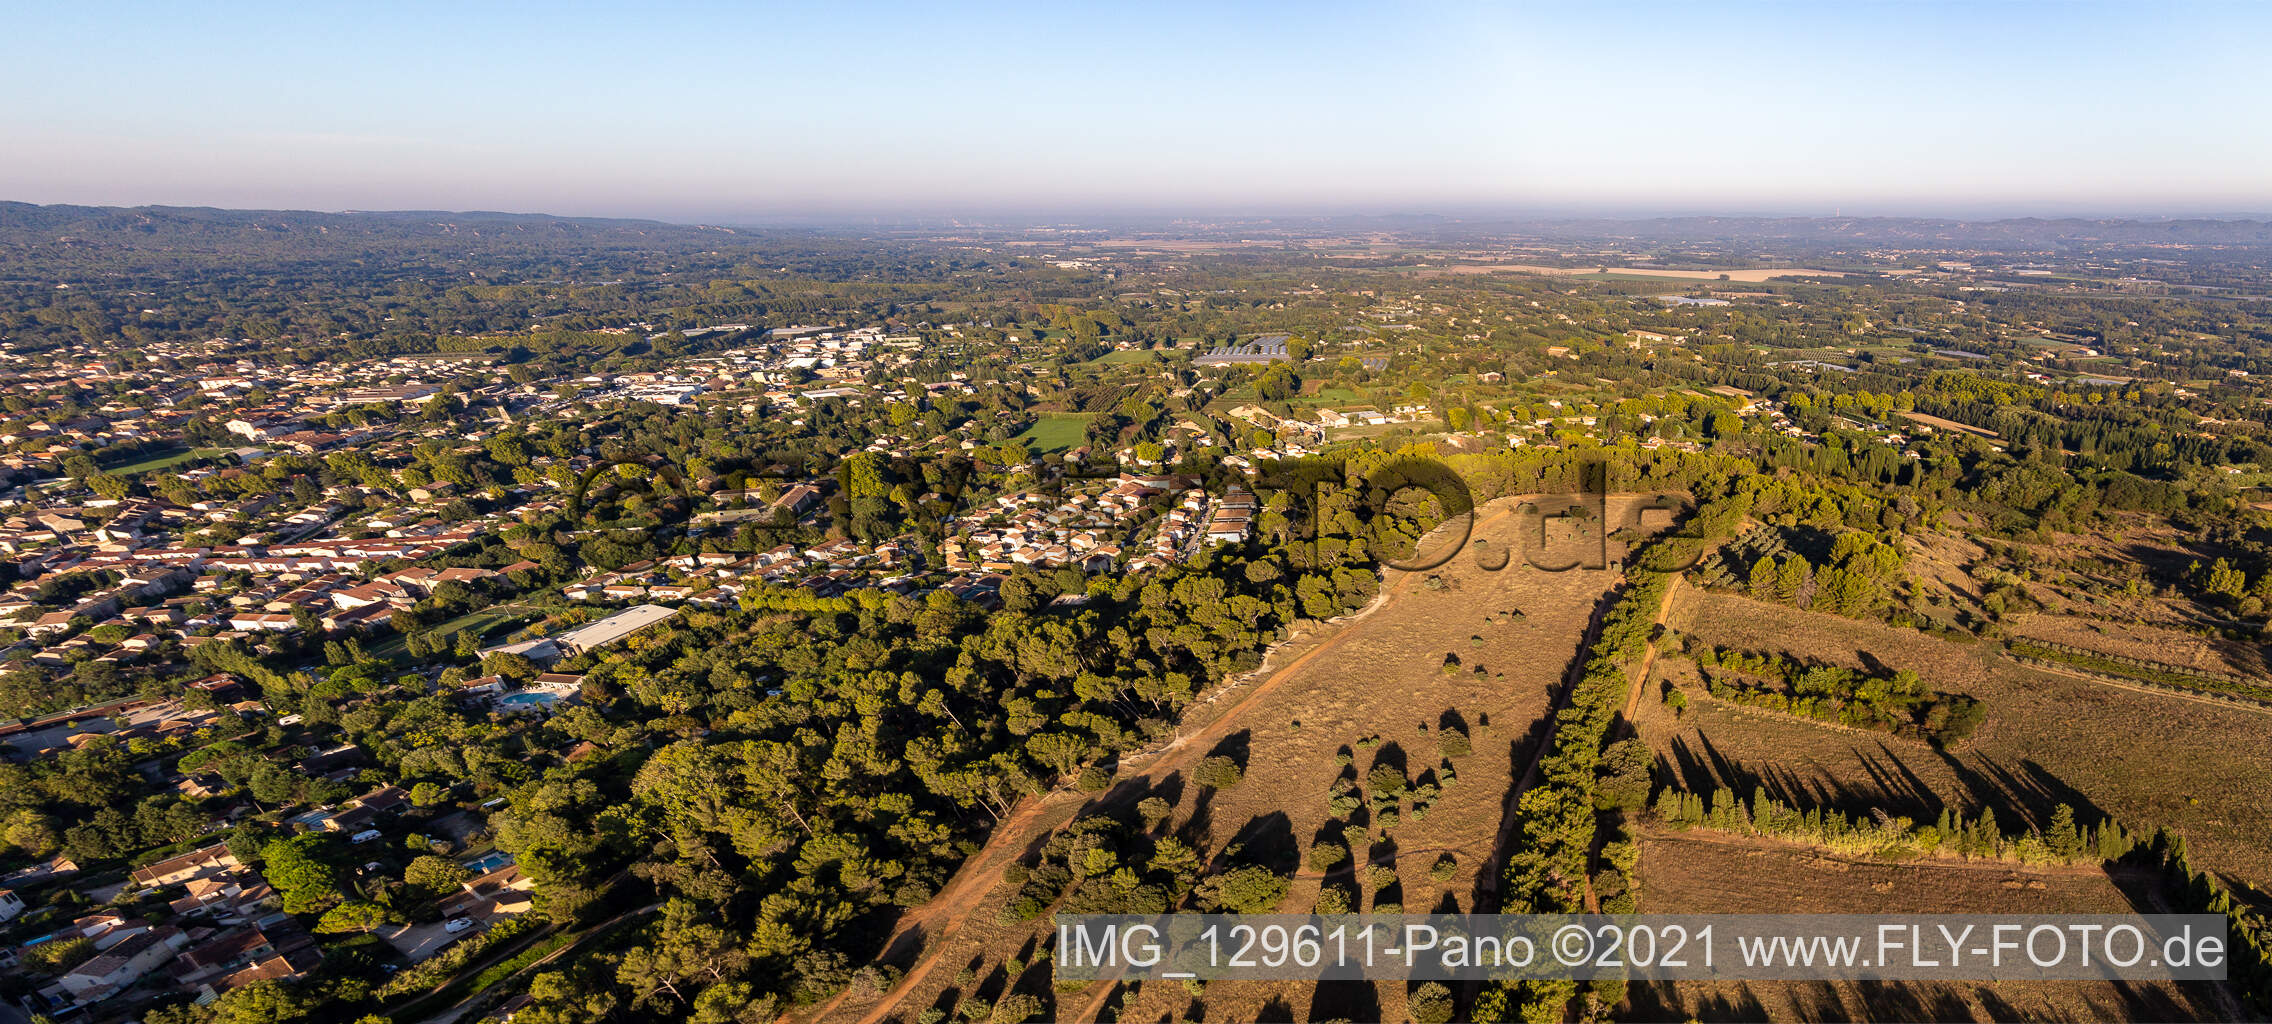 Luftbild von La plaine de Crau in Saint-Rémy-de-Provence im Bundesland Bouches-du-Rhône, Frankreich